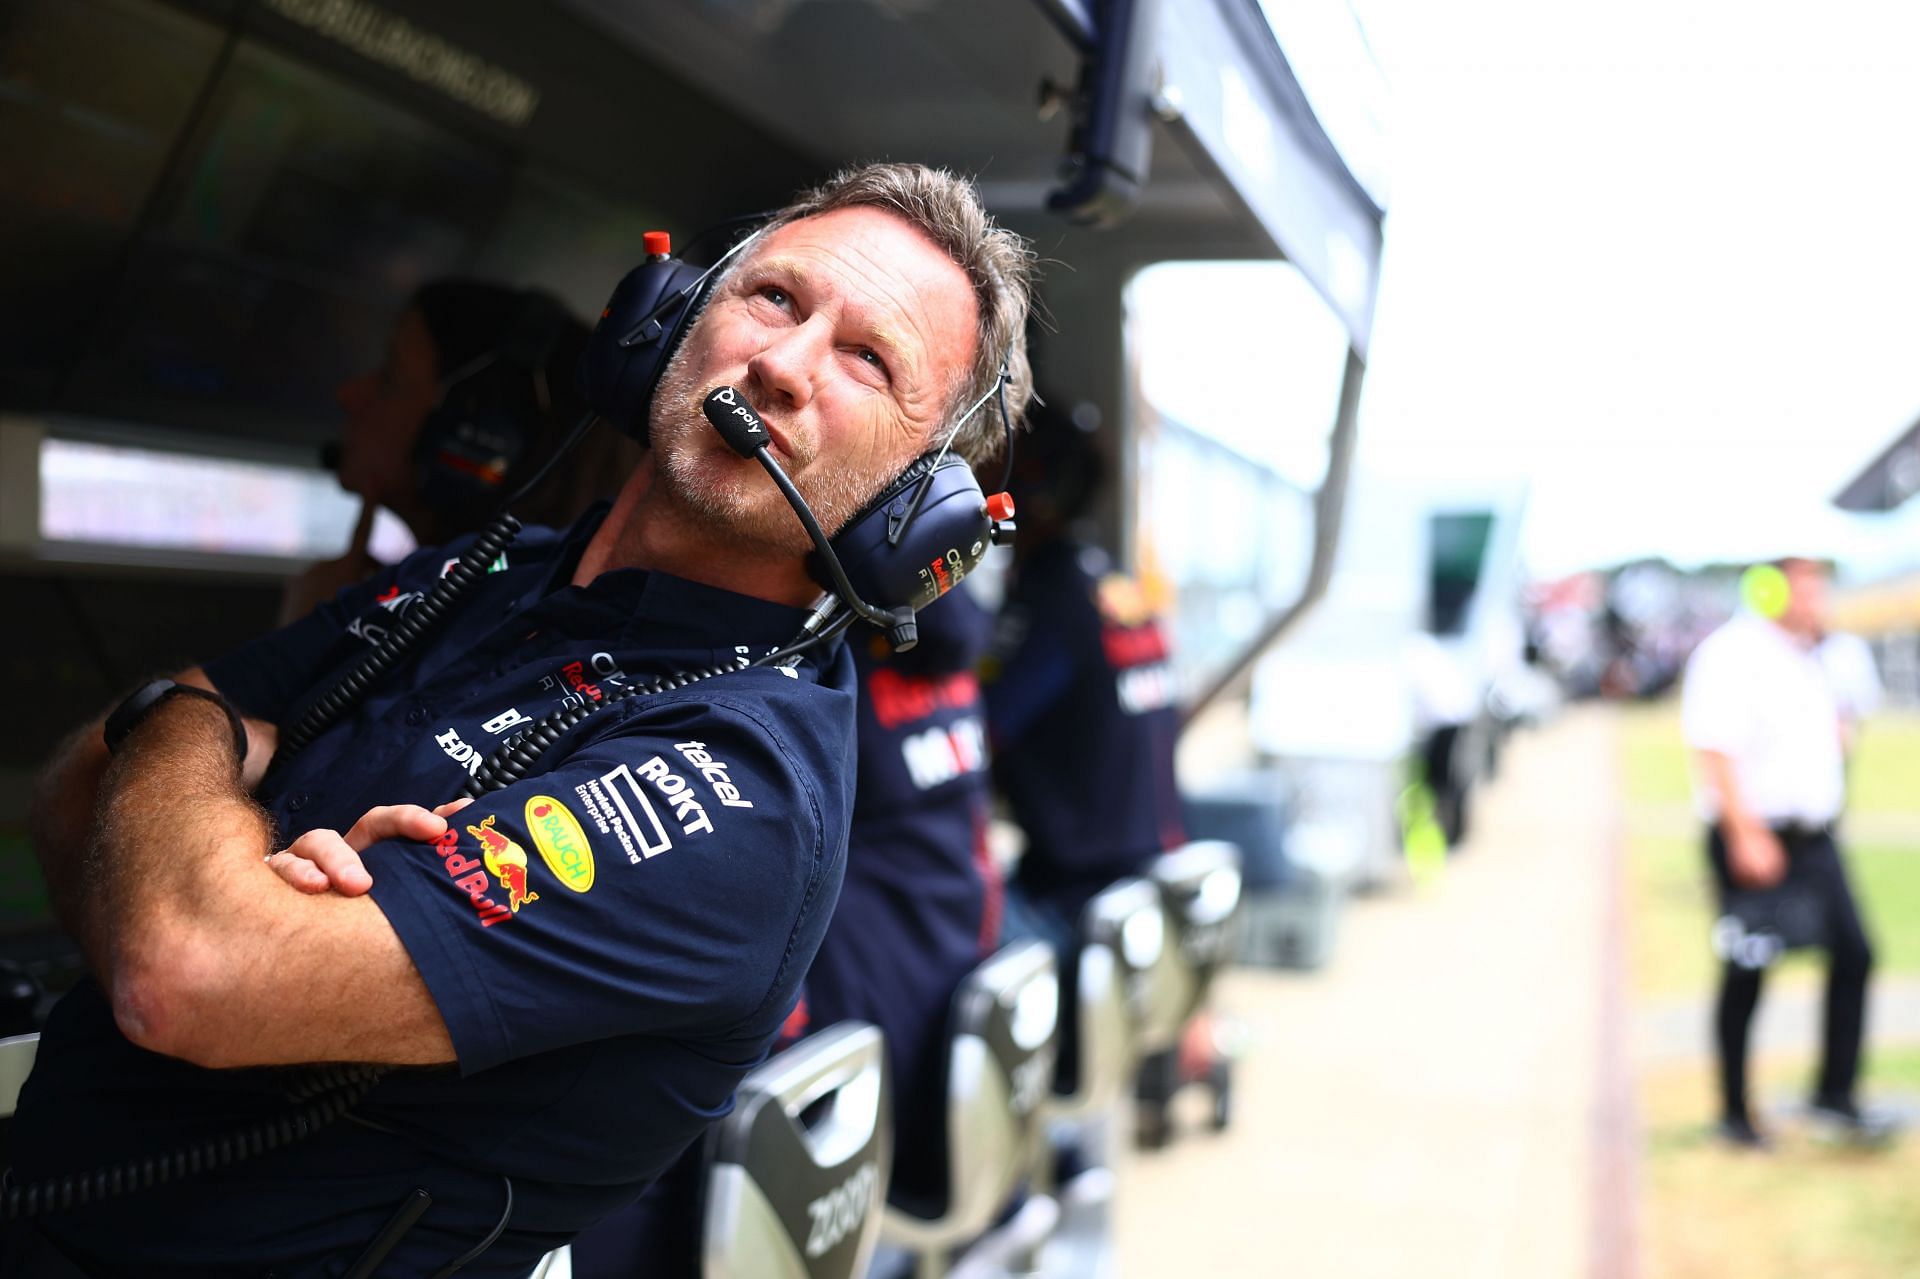 Red Bull team boss Christian Horner